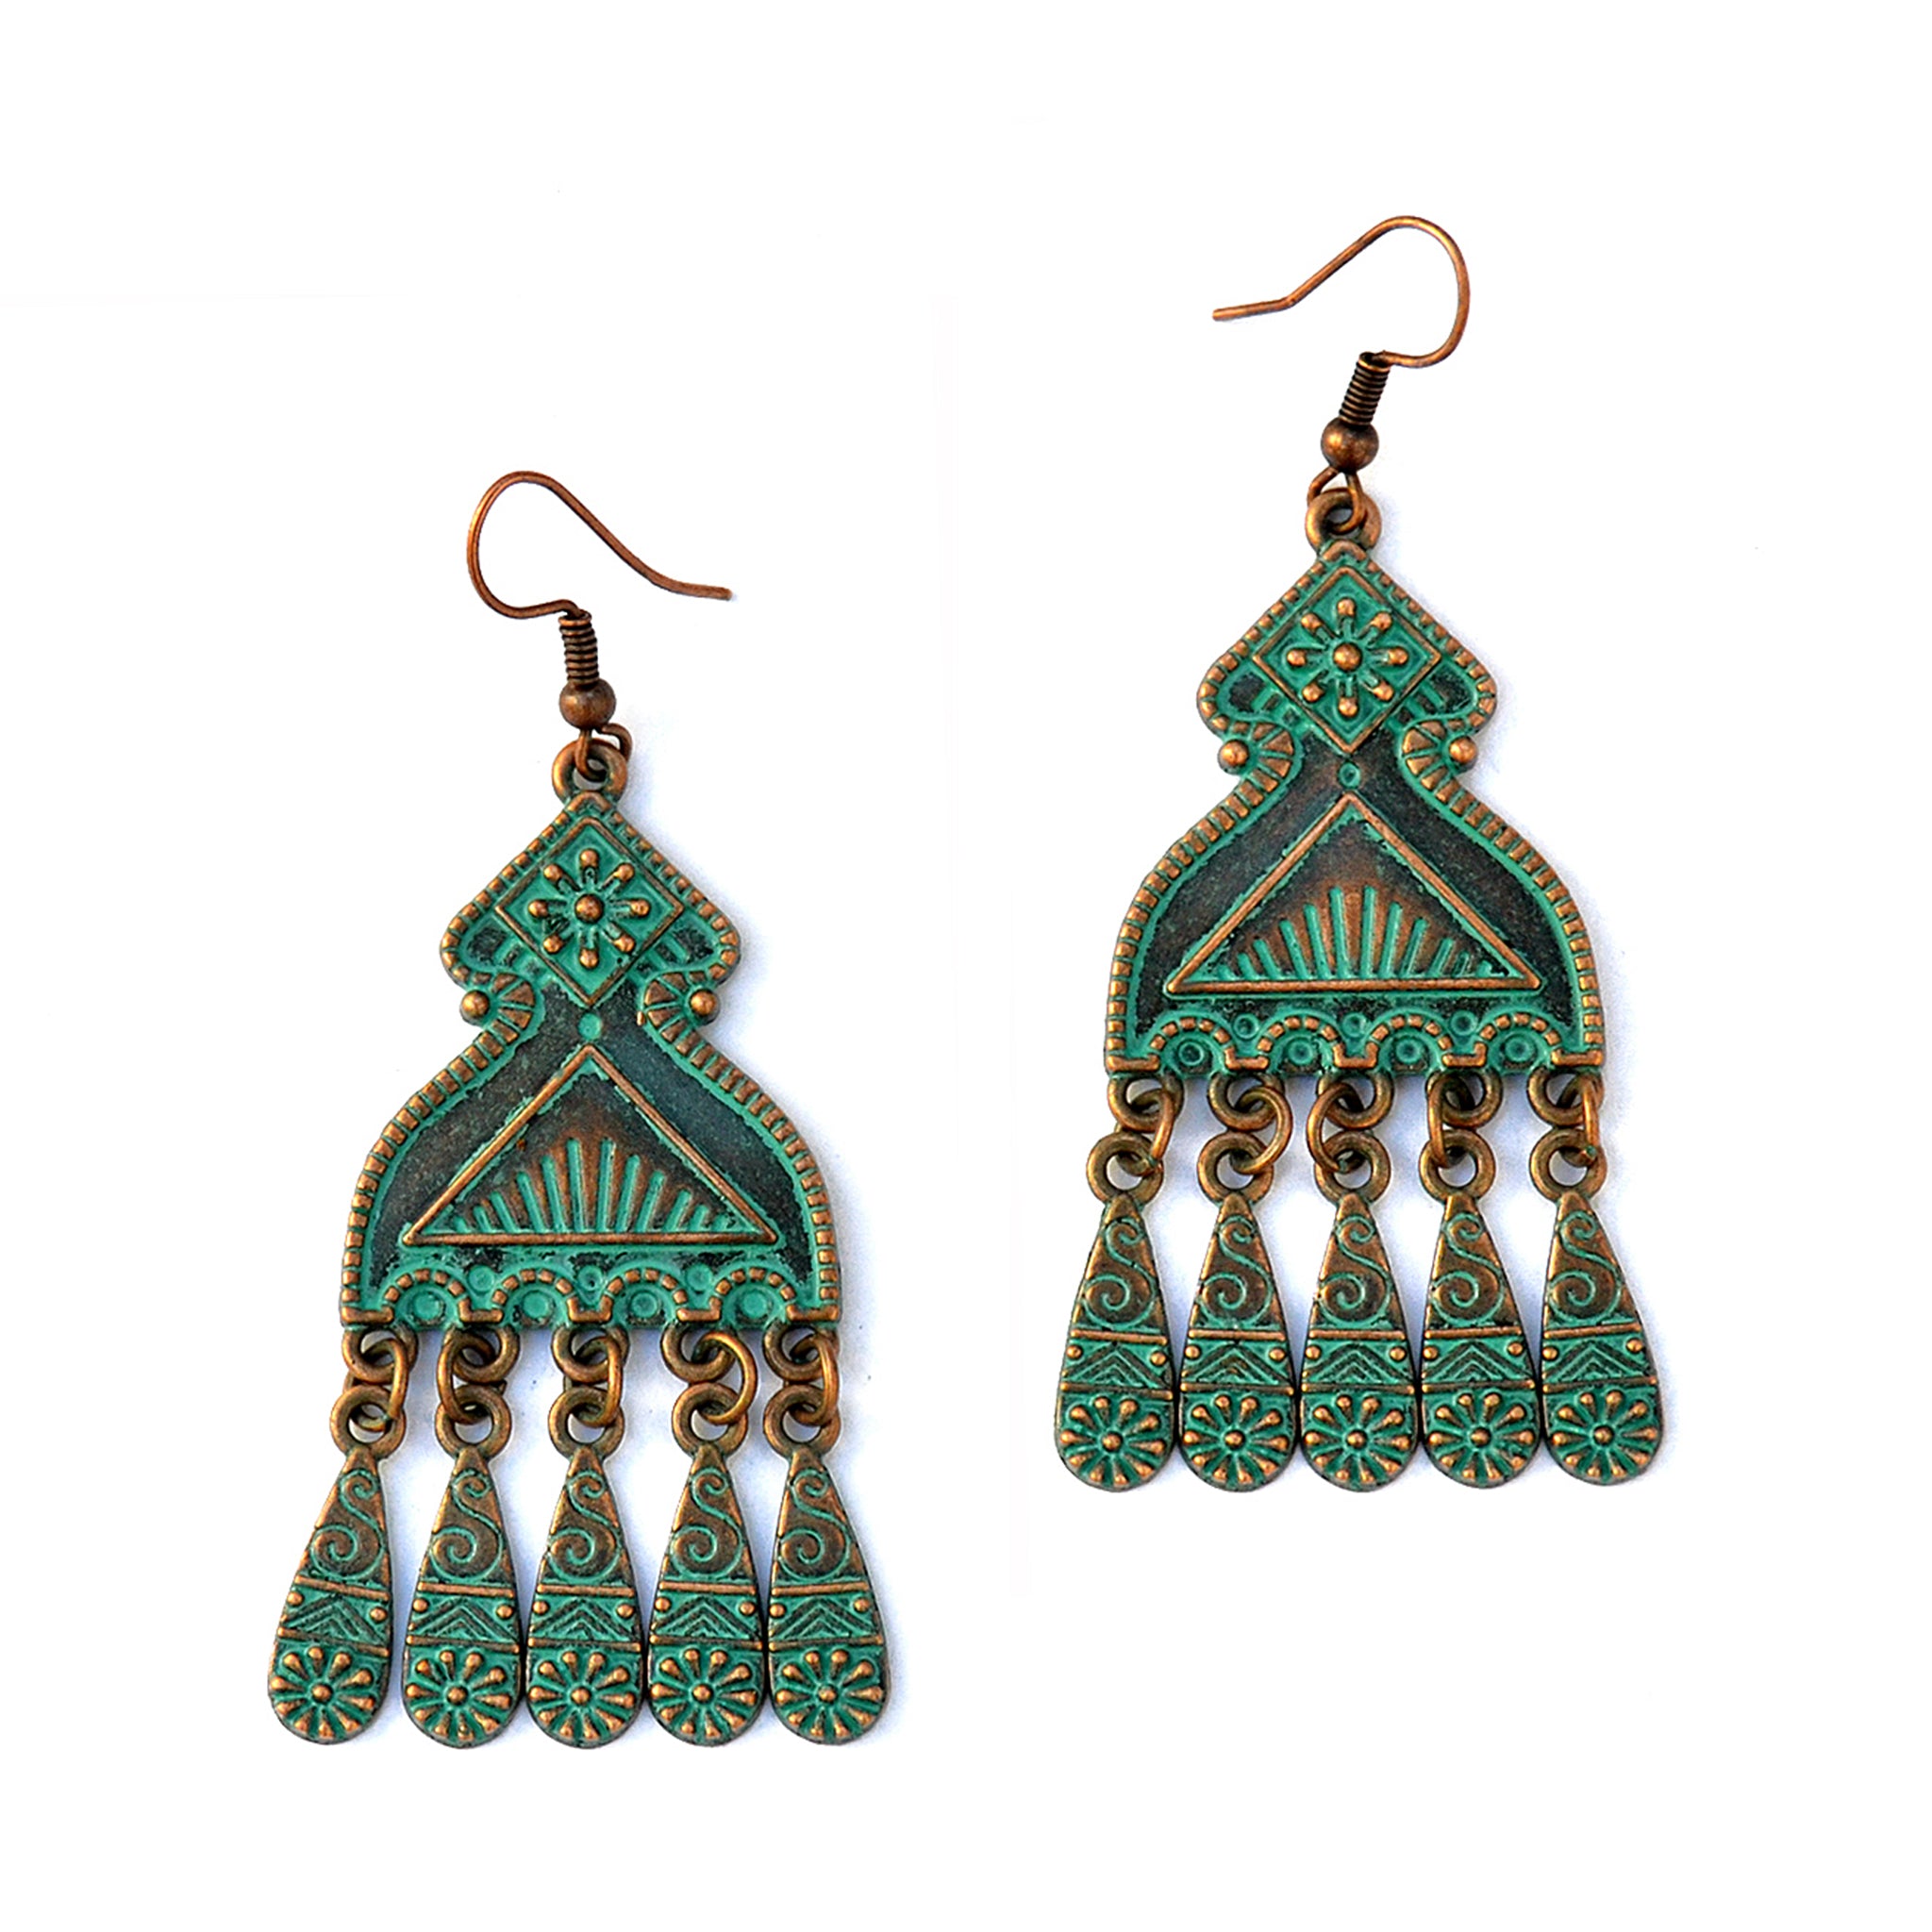 Gypsy verdigris earrings